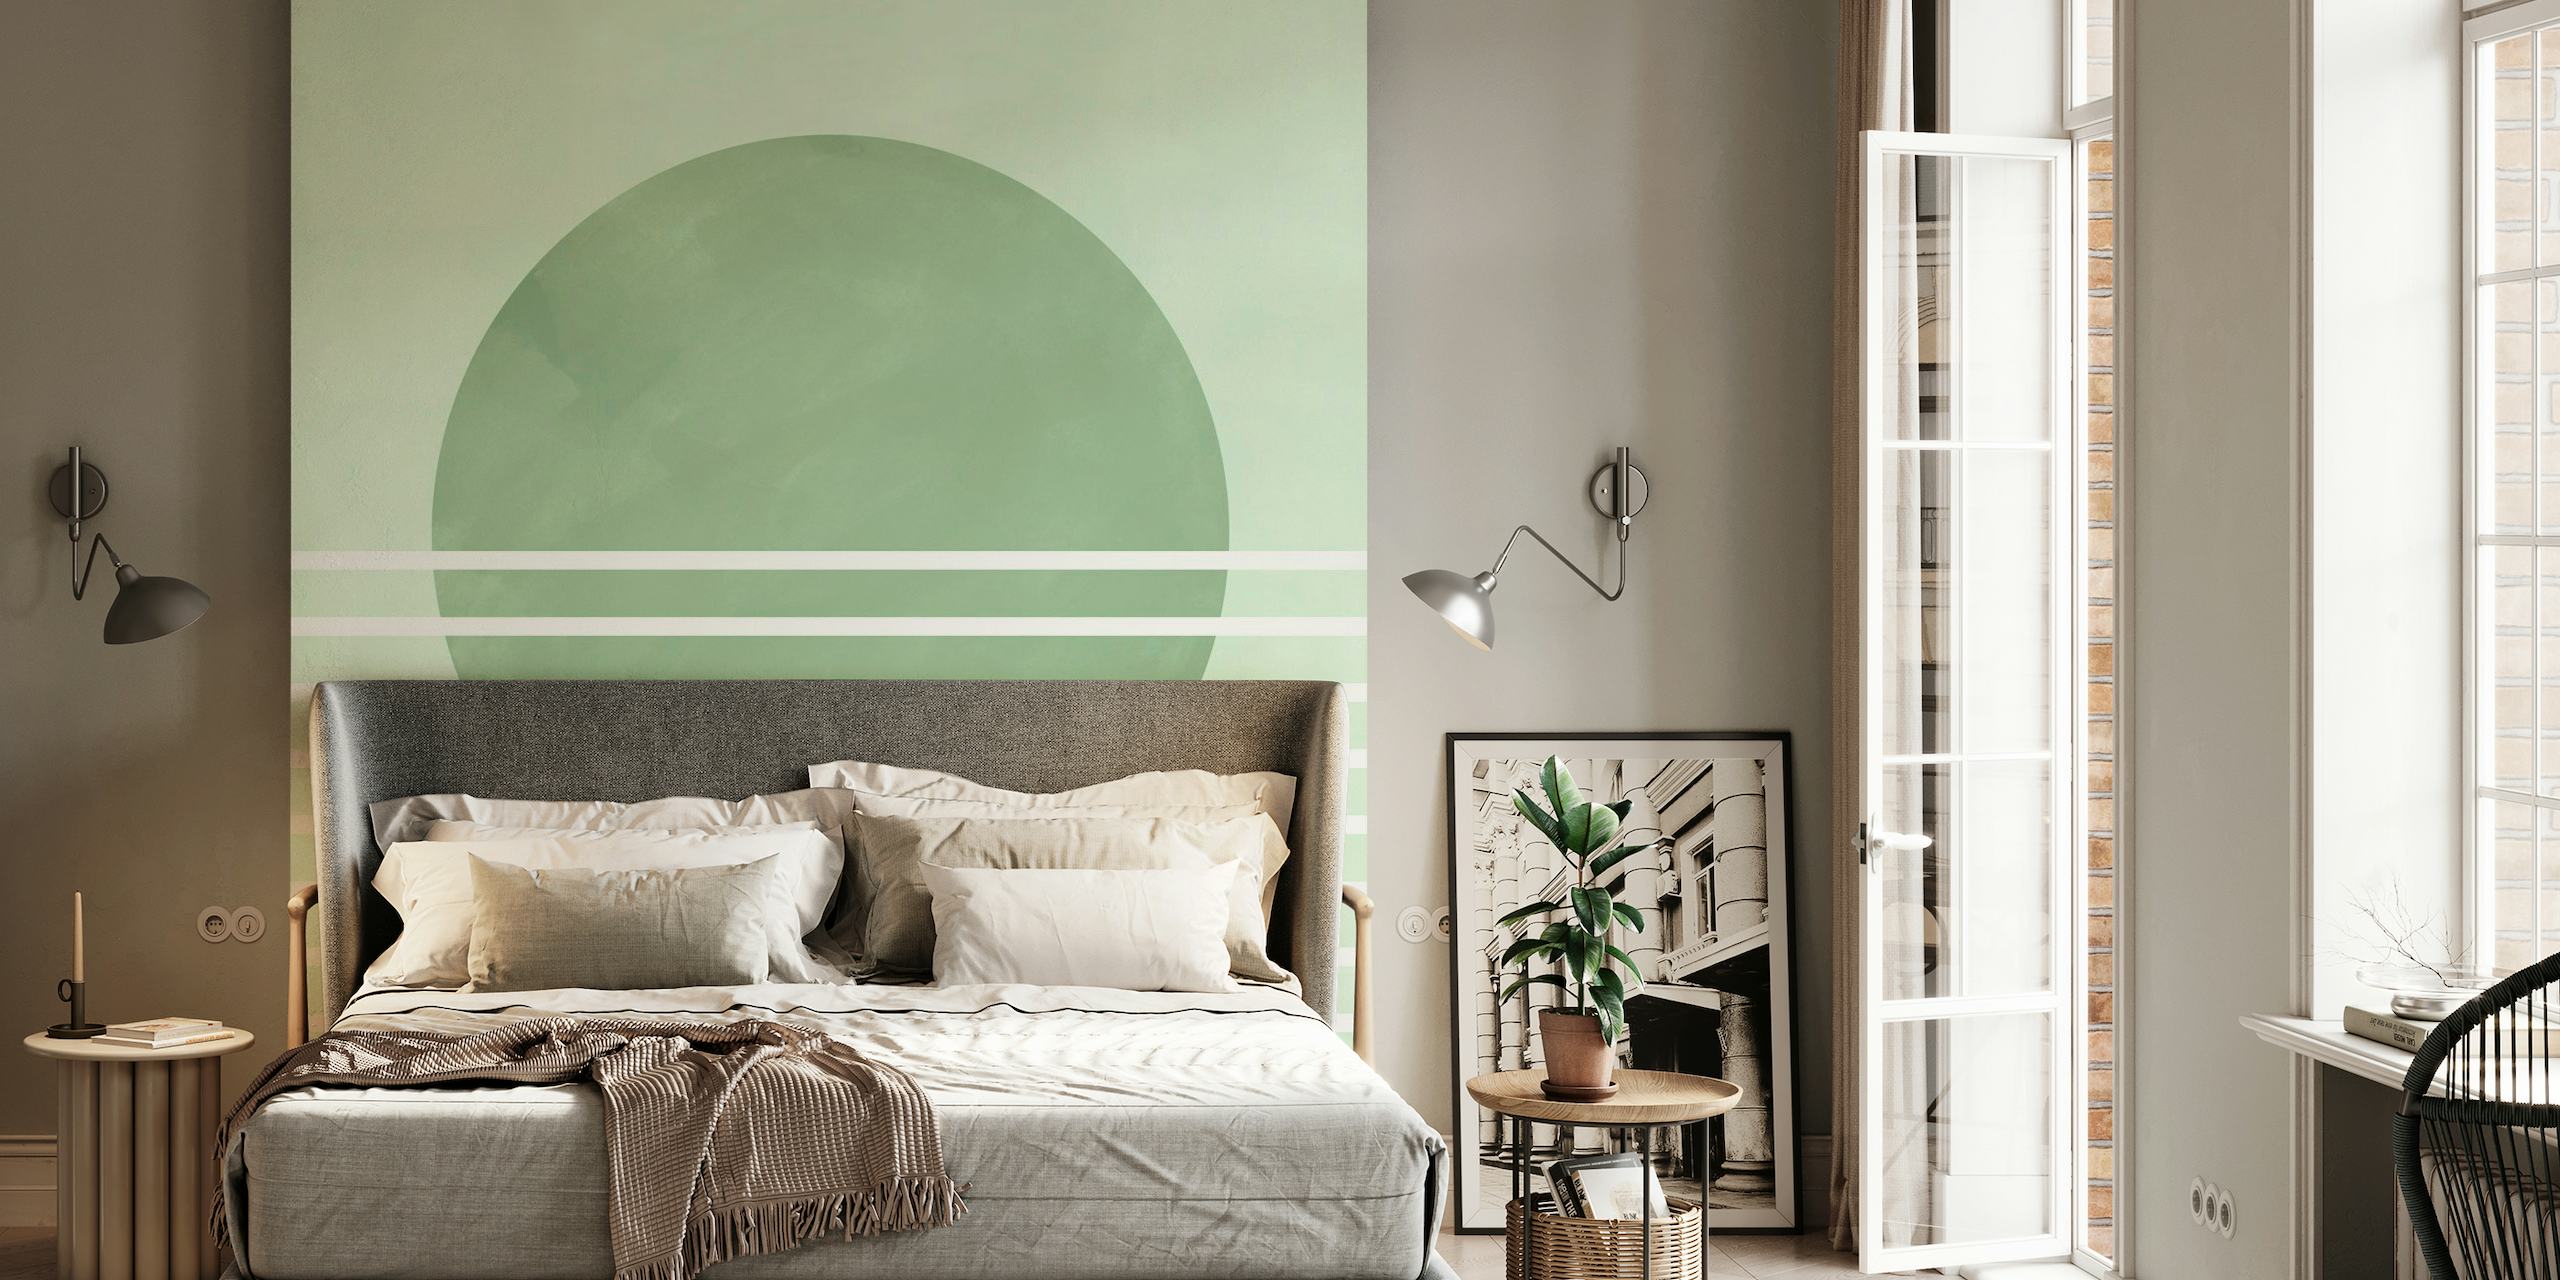 Abstraktes Wandbild mit sanften grünen Kreisen und horizontalen Streifen